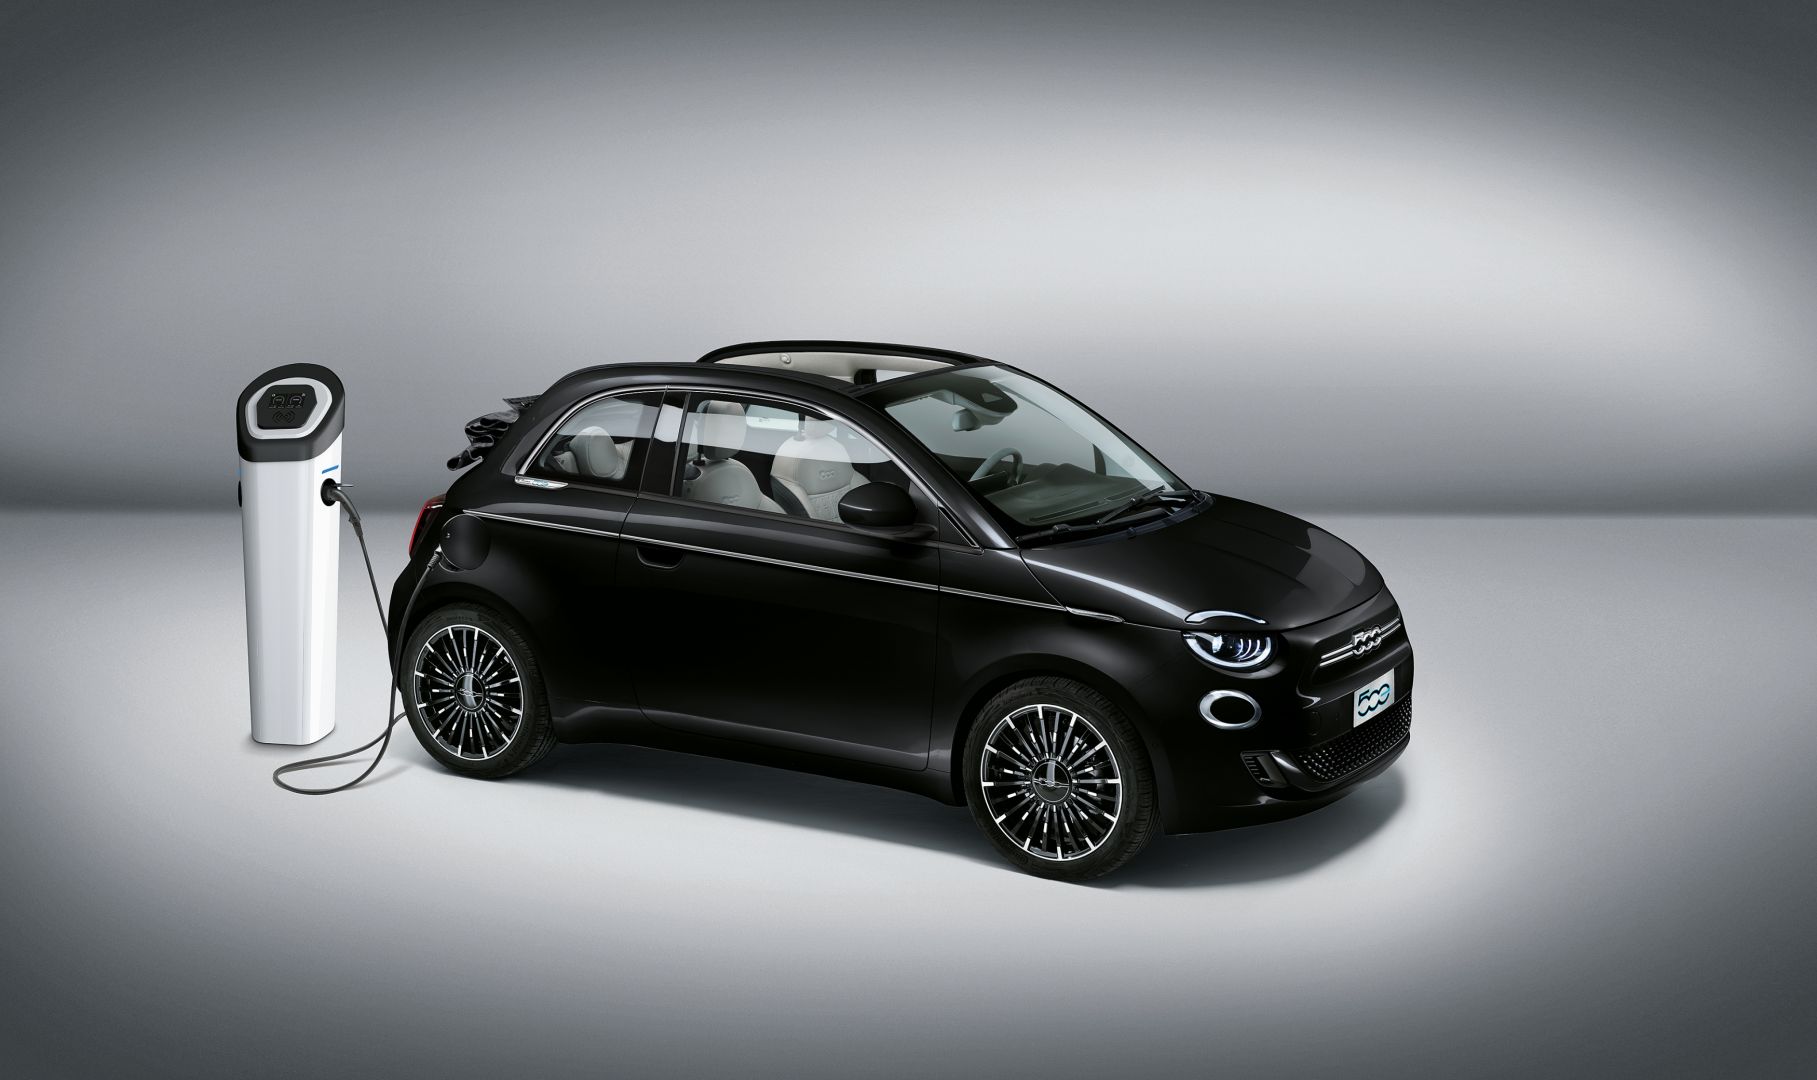 Fiat launches New 500 La Prima by Bocelli with JBL premium sound system at PortalAutomotriz.com